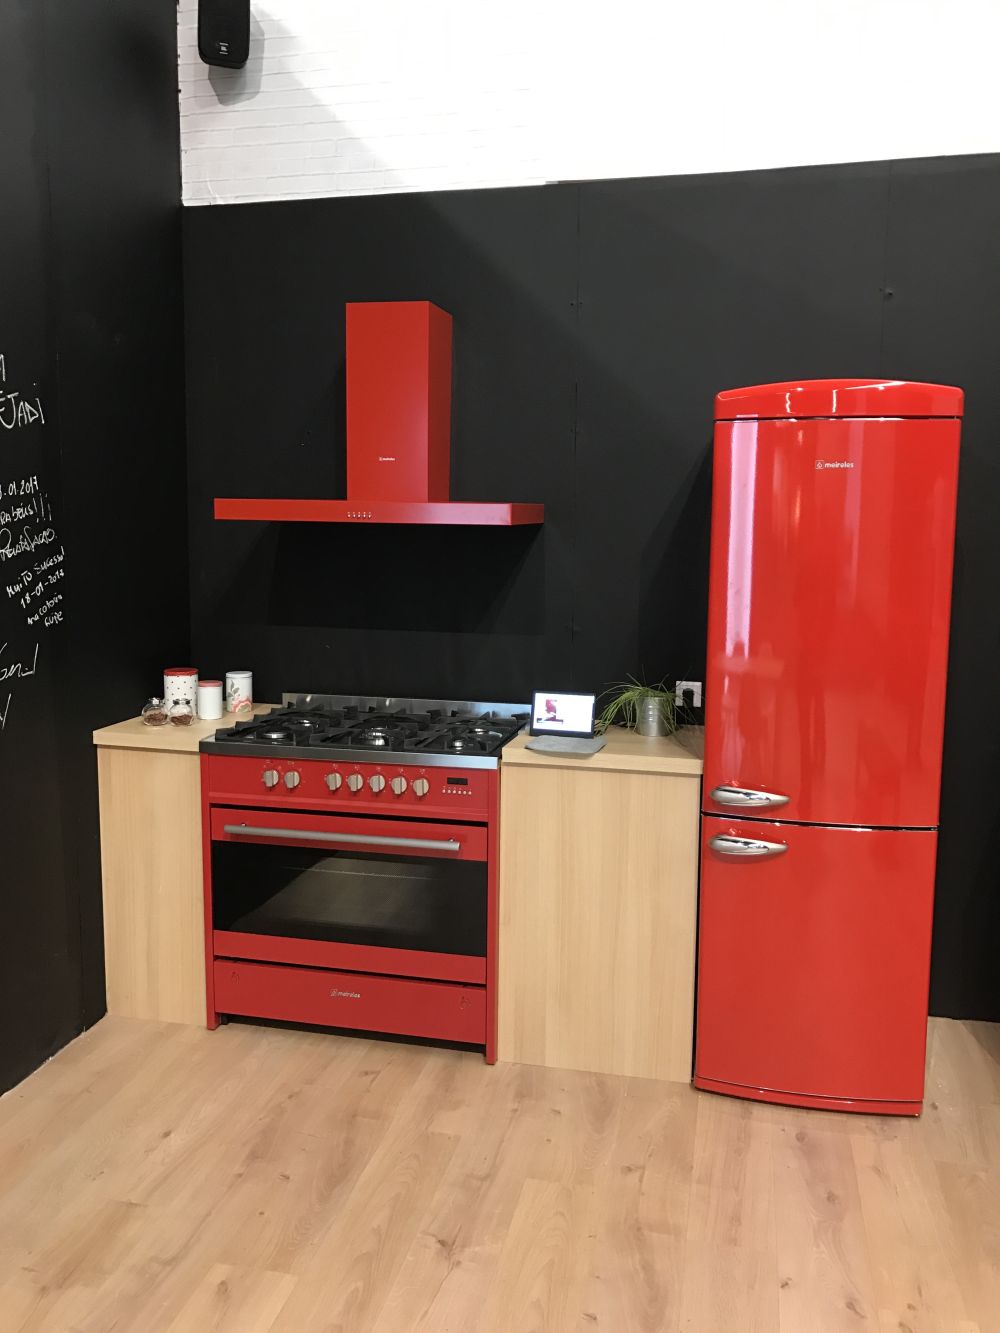 De même, un réfrigérateur rouge peut être assorti d'un four rouge et d'une hotte rouge, mais vous pouvez également combiner deux ou plusieurs couleurs